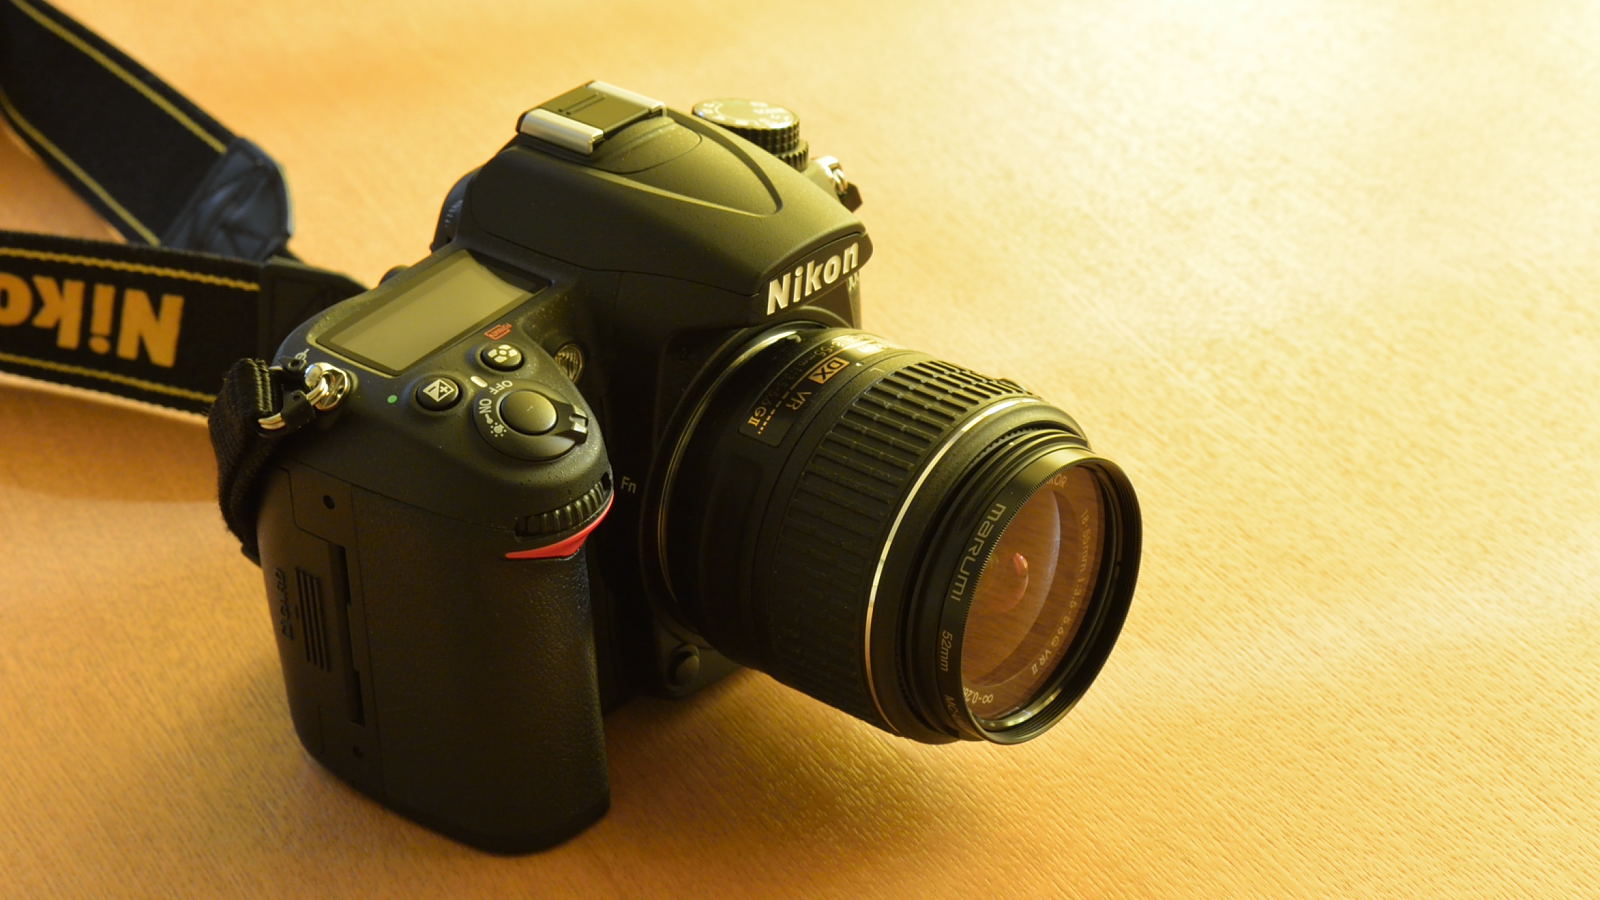 Nikon AF-S DX NIKKOR 18-55mmF3.5-5.6G VR